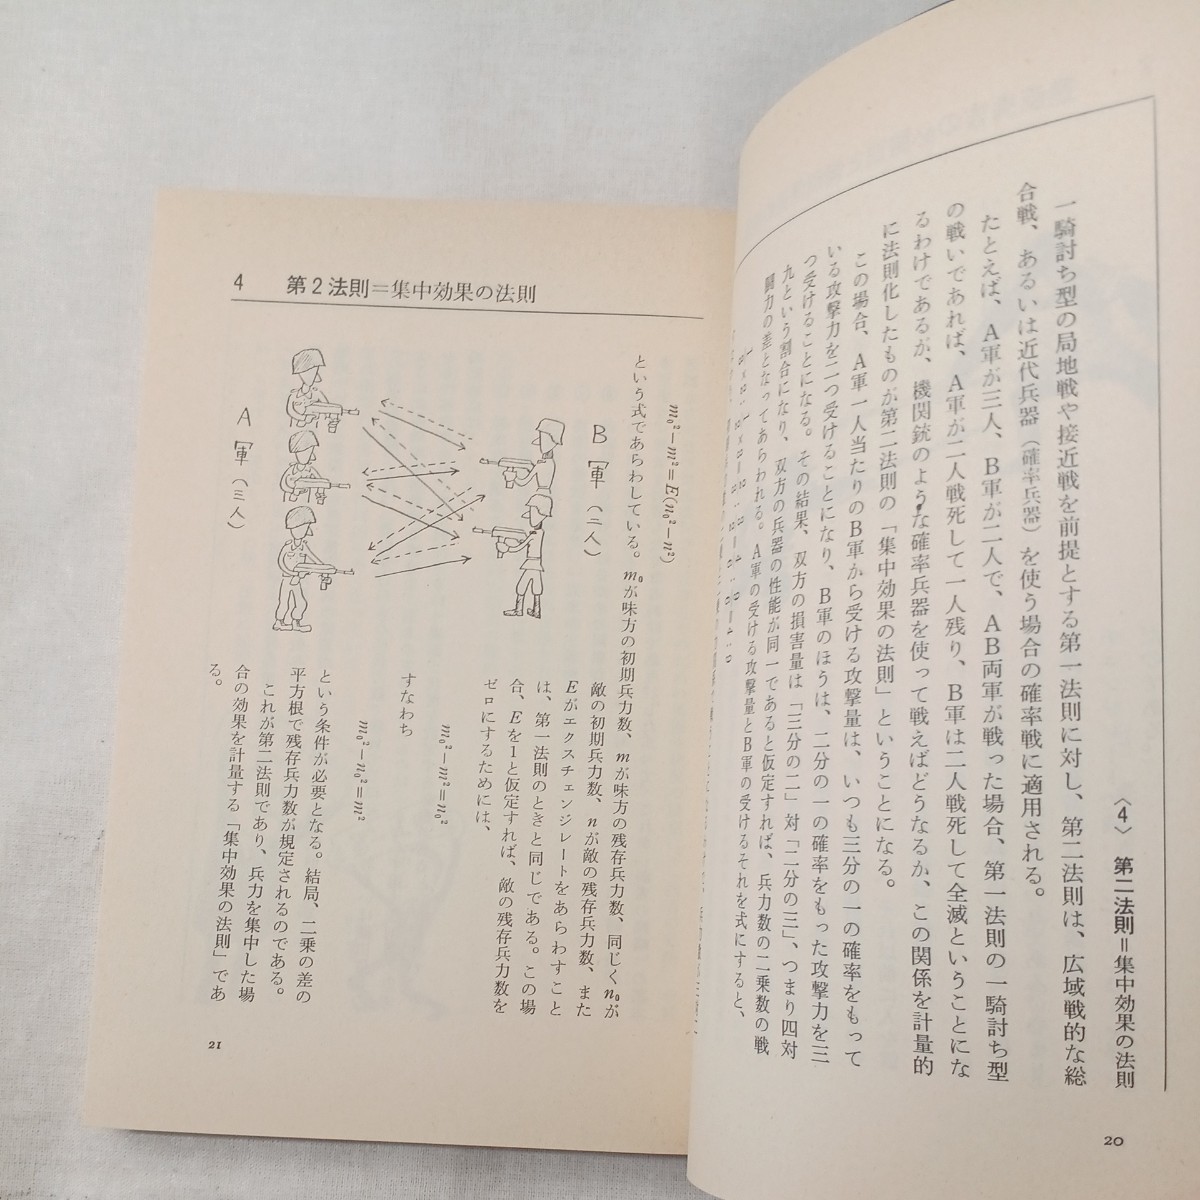 zaa-447♪図解ランチェスター法則入門 　 田岡 信夫 (著)　ビジネス社 (1992/1/1)